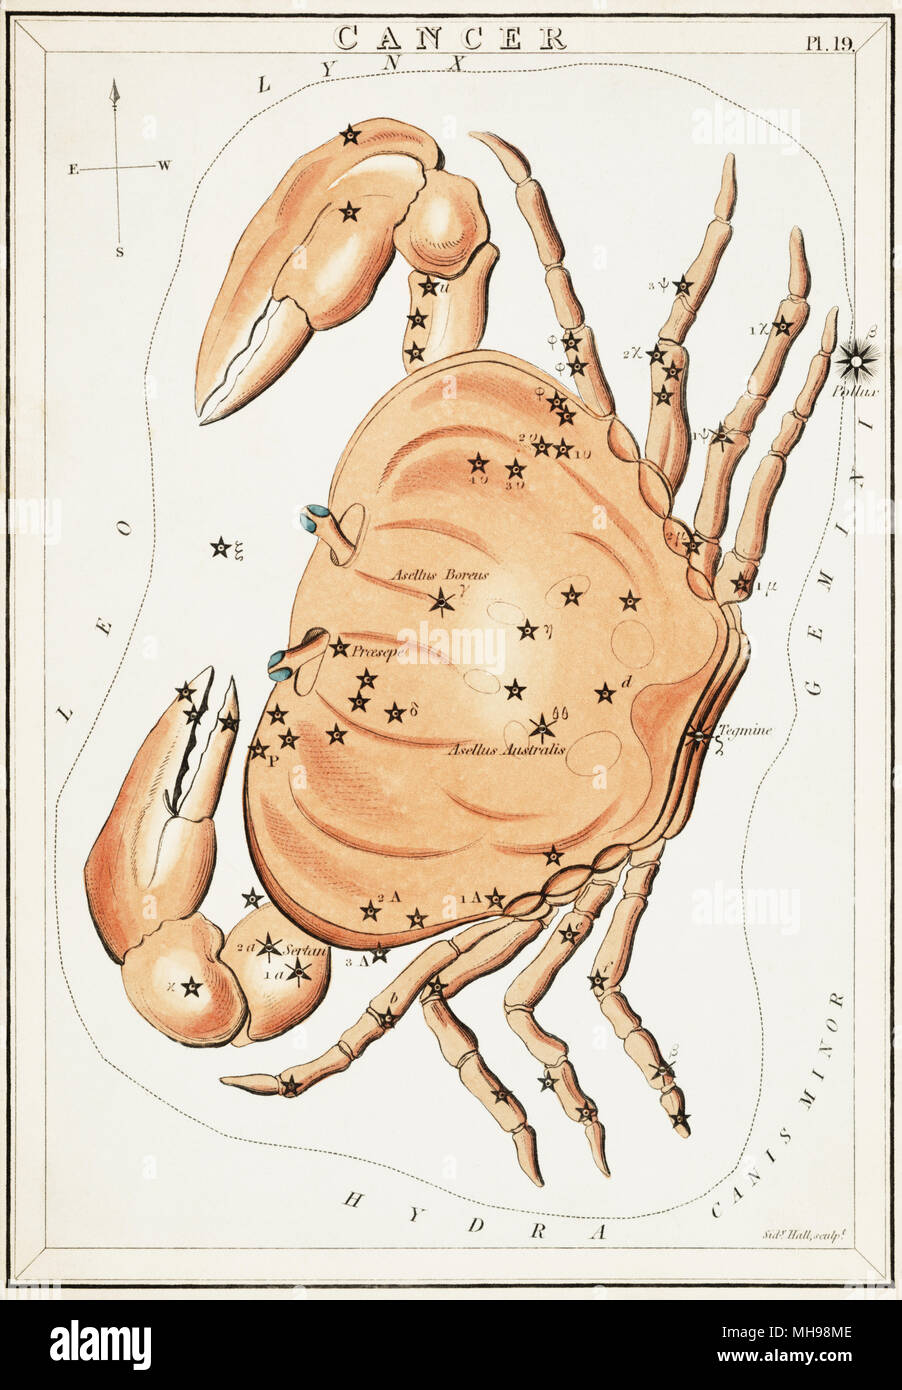 Krebs. Karte Nummer 19 von Urania's Mirror, oder einen Blick auf den Himmel, eines der 32 astronomischen Star Chart Karten von Sidney Hall graviert und publshed 1824. Stockfoto